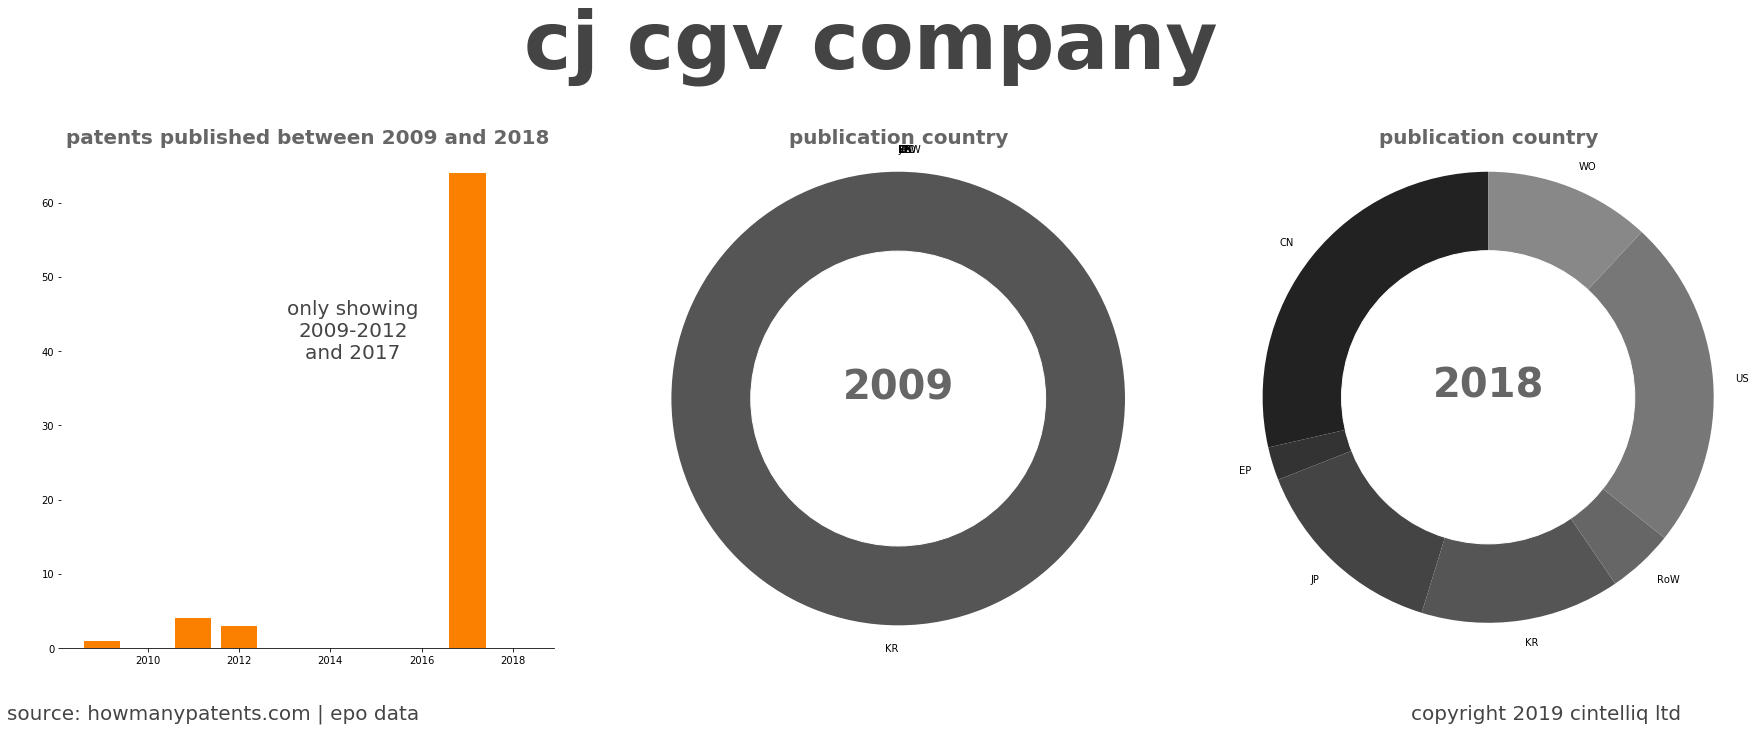 summary of patents for Cj Cgv Company